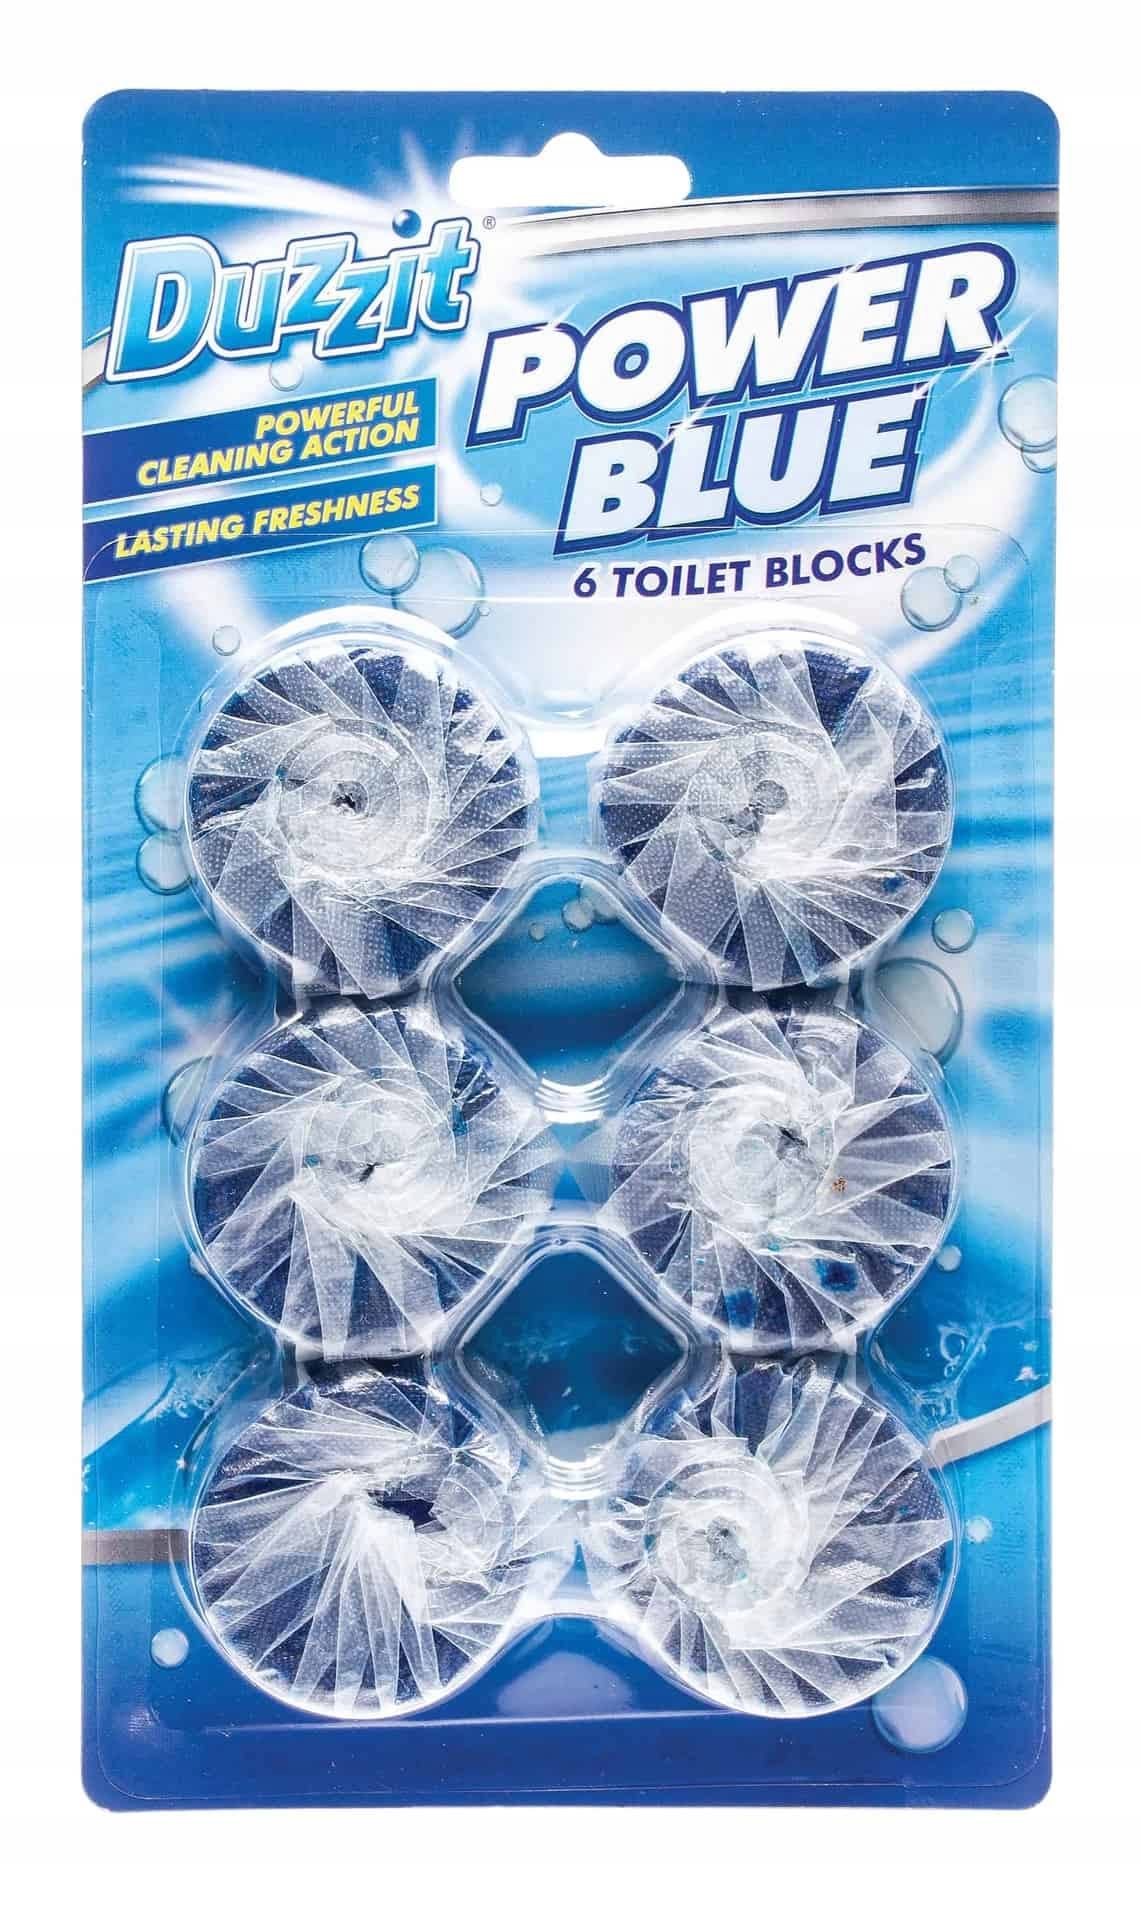 Duzzit Power Blue - 6 Toilet Black Tablets